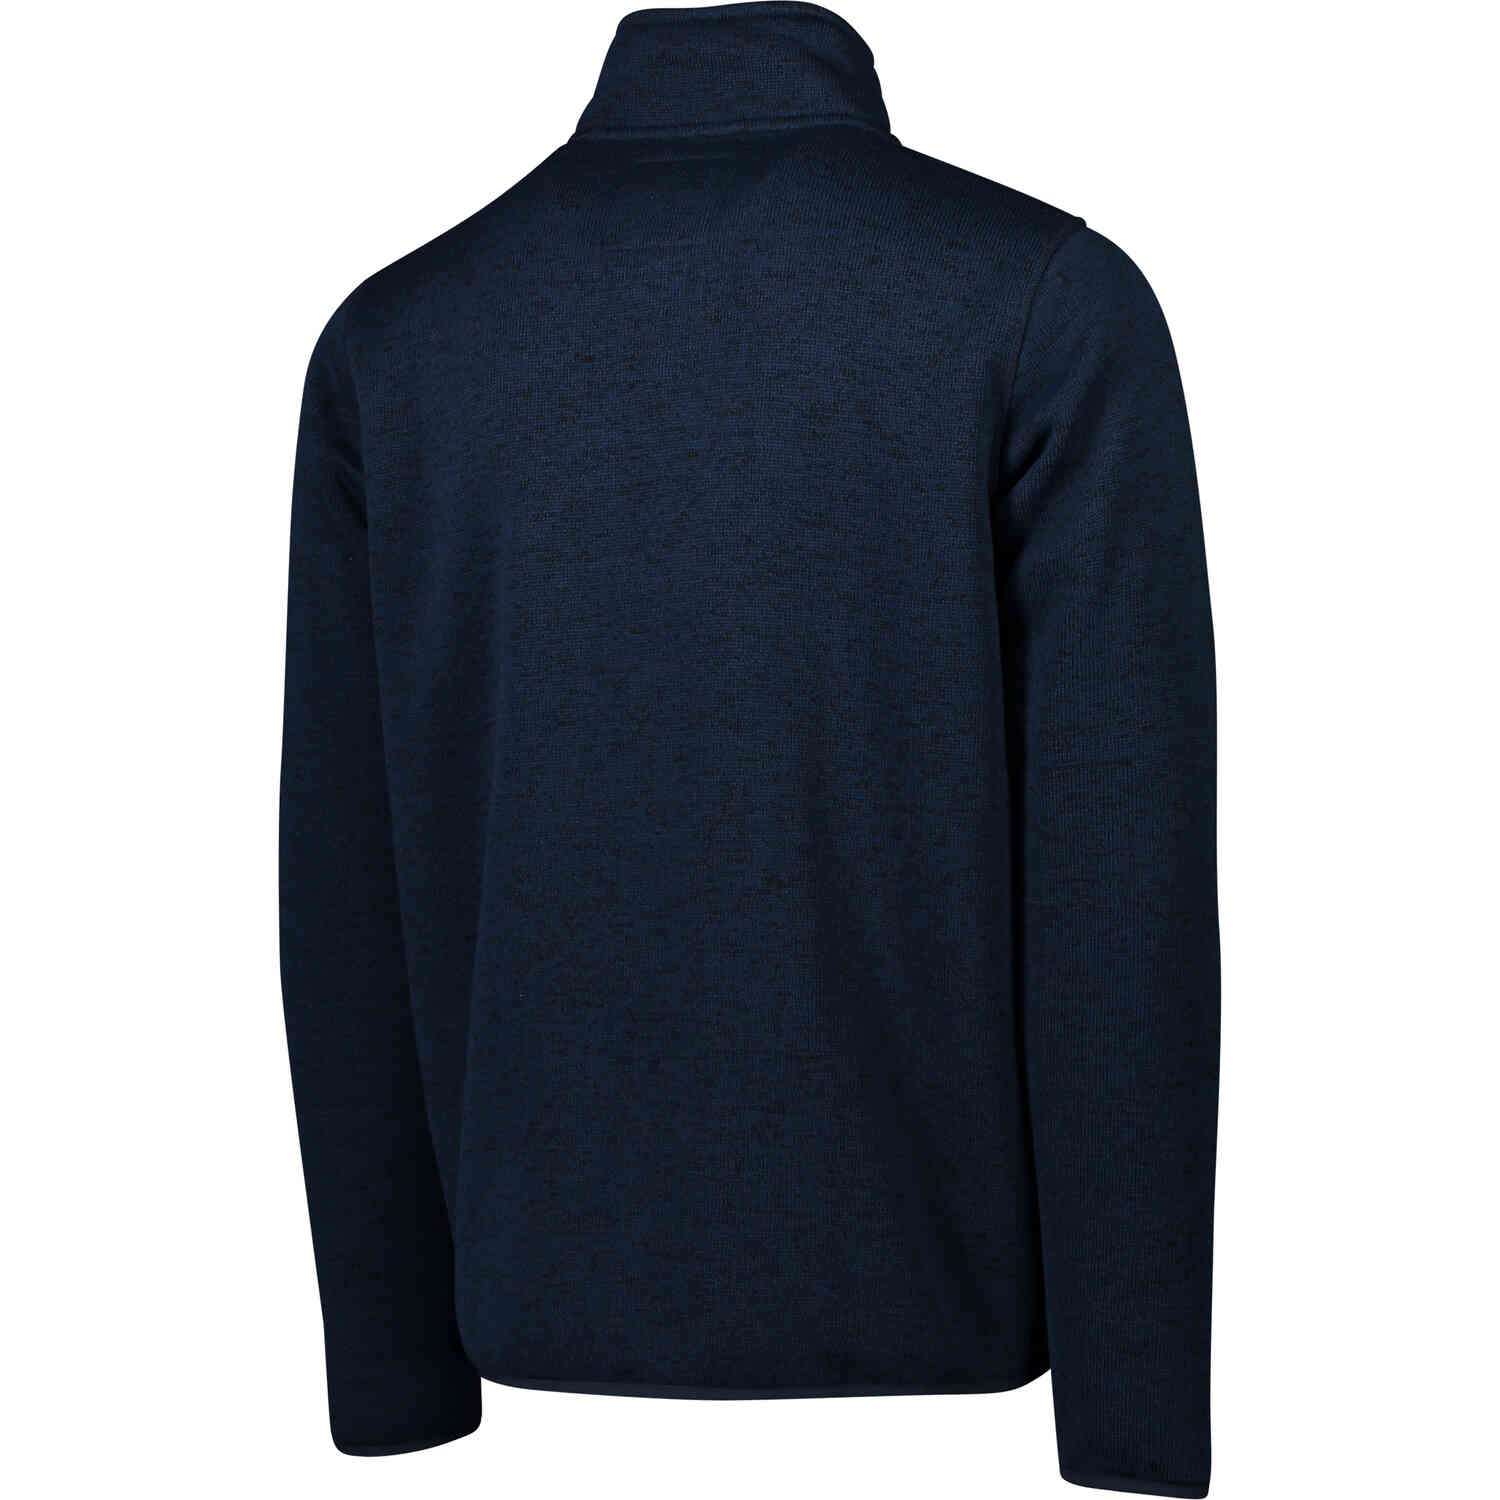 Chelsea Knitted Fleece Jacket - Navy Melange - SoccerPro